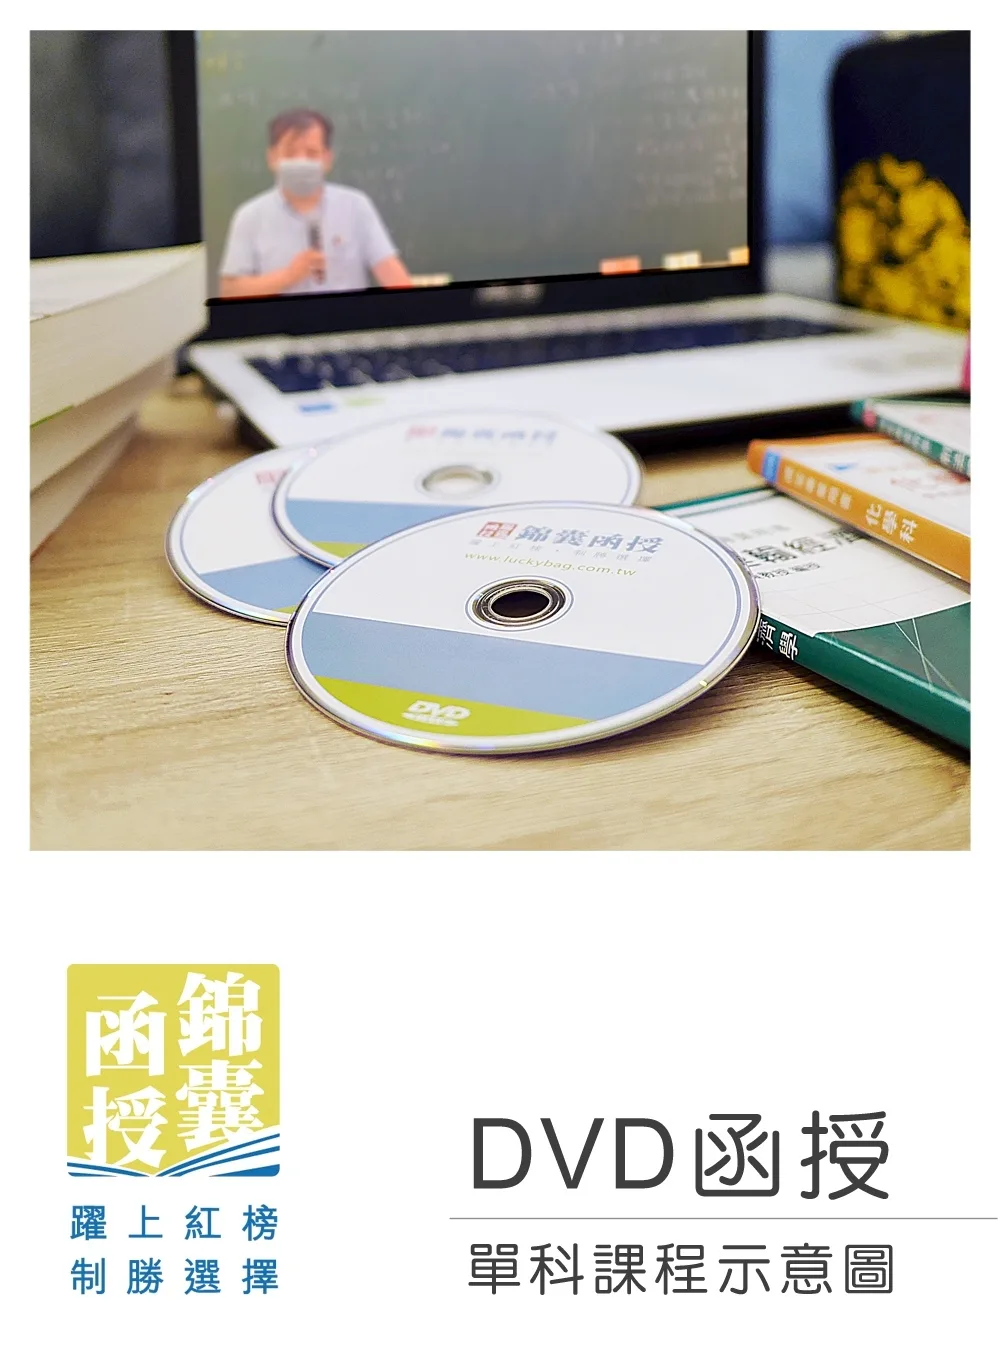 【DVD函授】地方政府與政治-單科課程(112版)